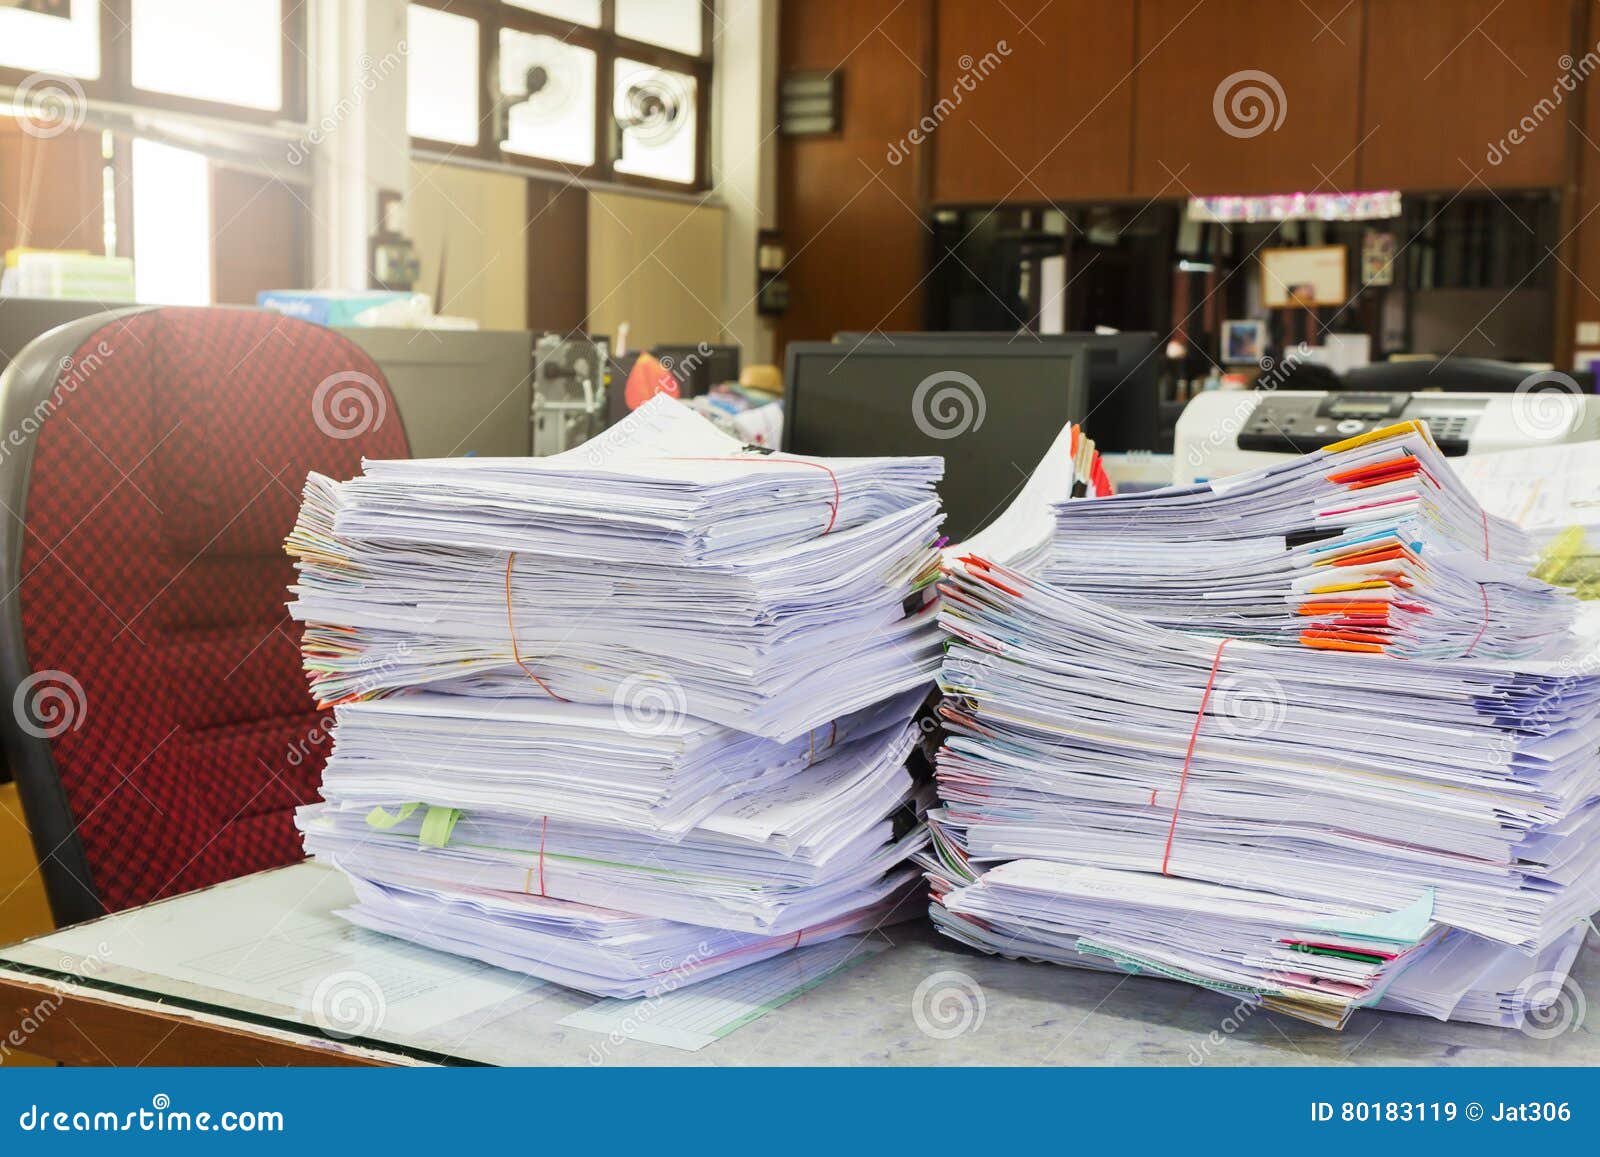 Много бумаг на столе. Бумаги на столе. Куча бумаг. Деловые бумаги. Куча бумаг на столе.